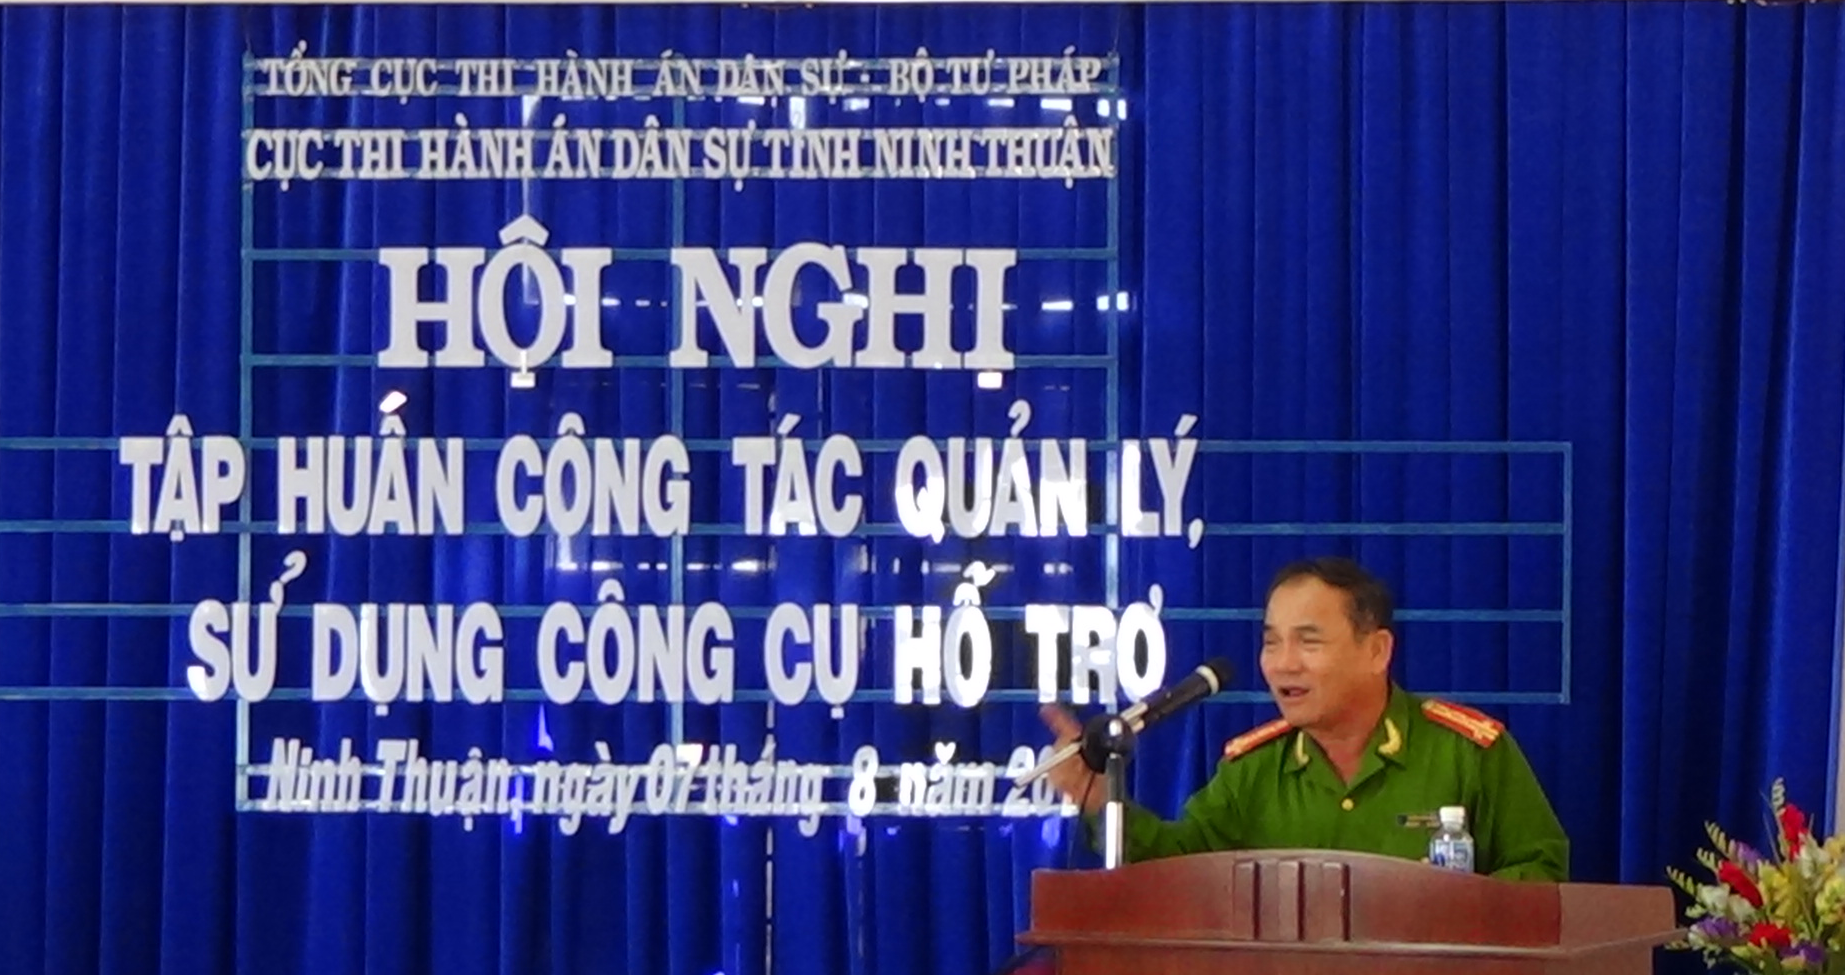 Ngày 07 tháng 8 năm 2015, Cục Thi hành án dân sự tỉnh Ninh Thuận tổ chức tập huấn công tác quản lý, sử dụng công cụ hỗ trợ